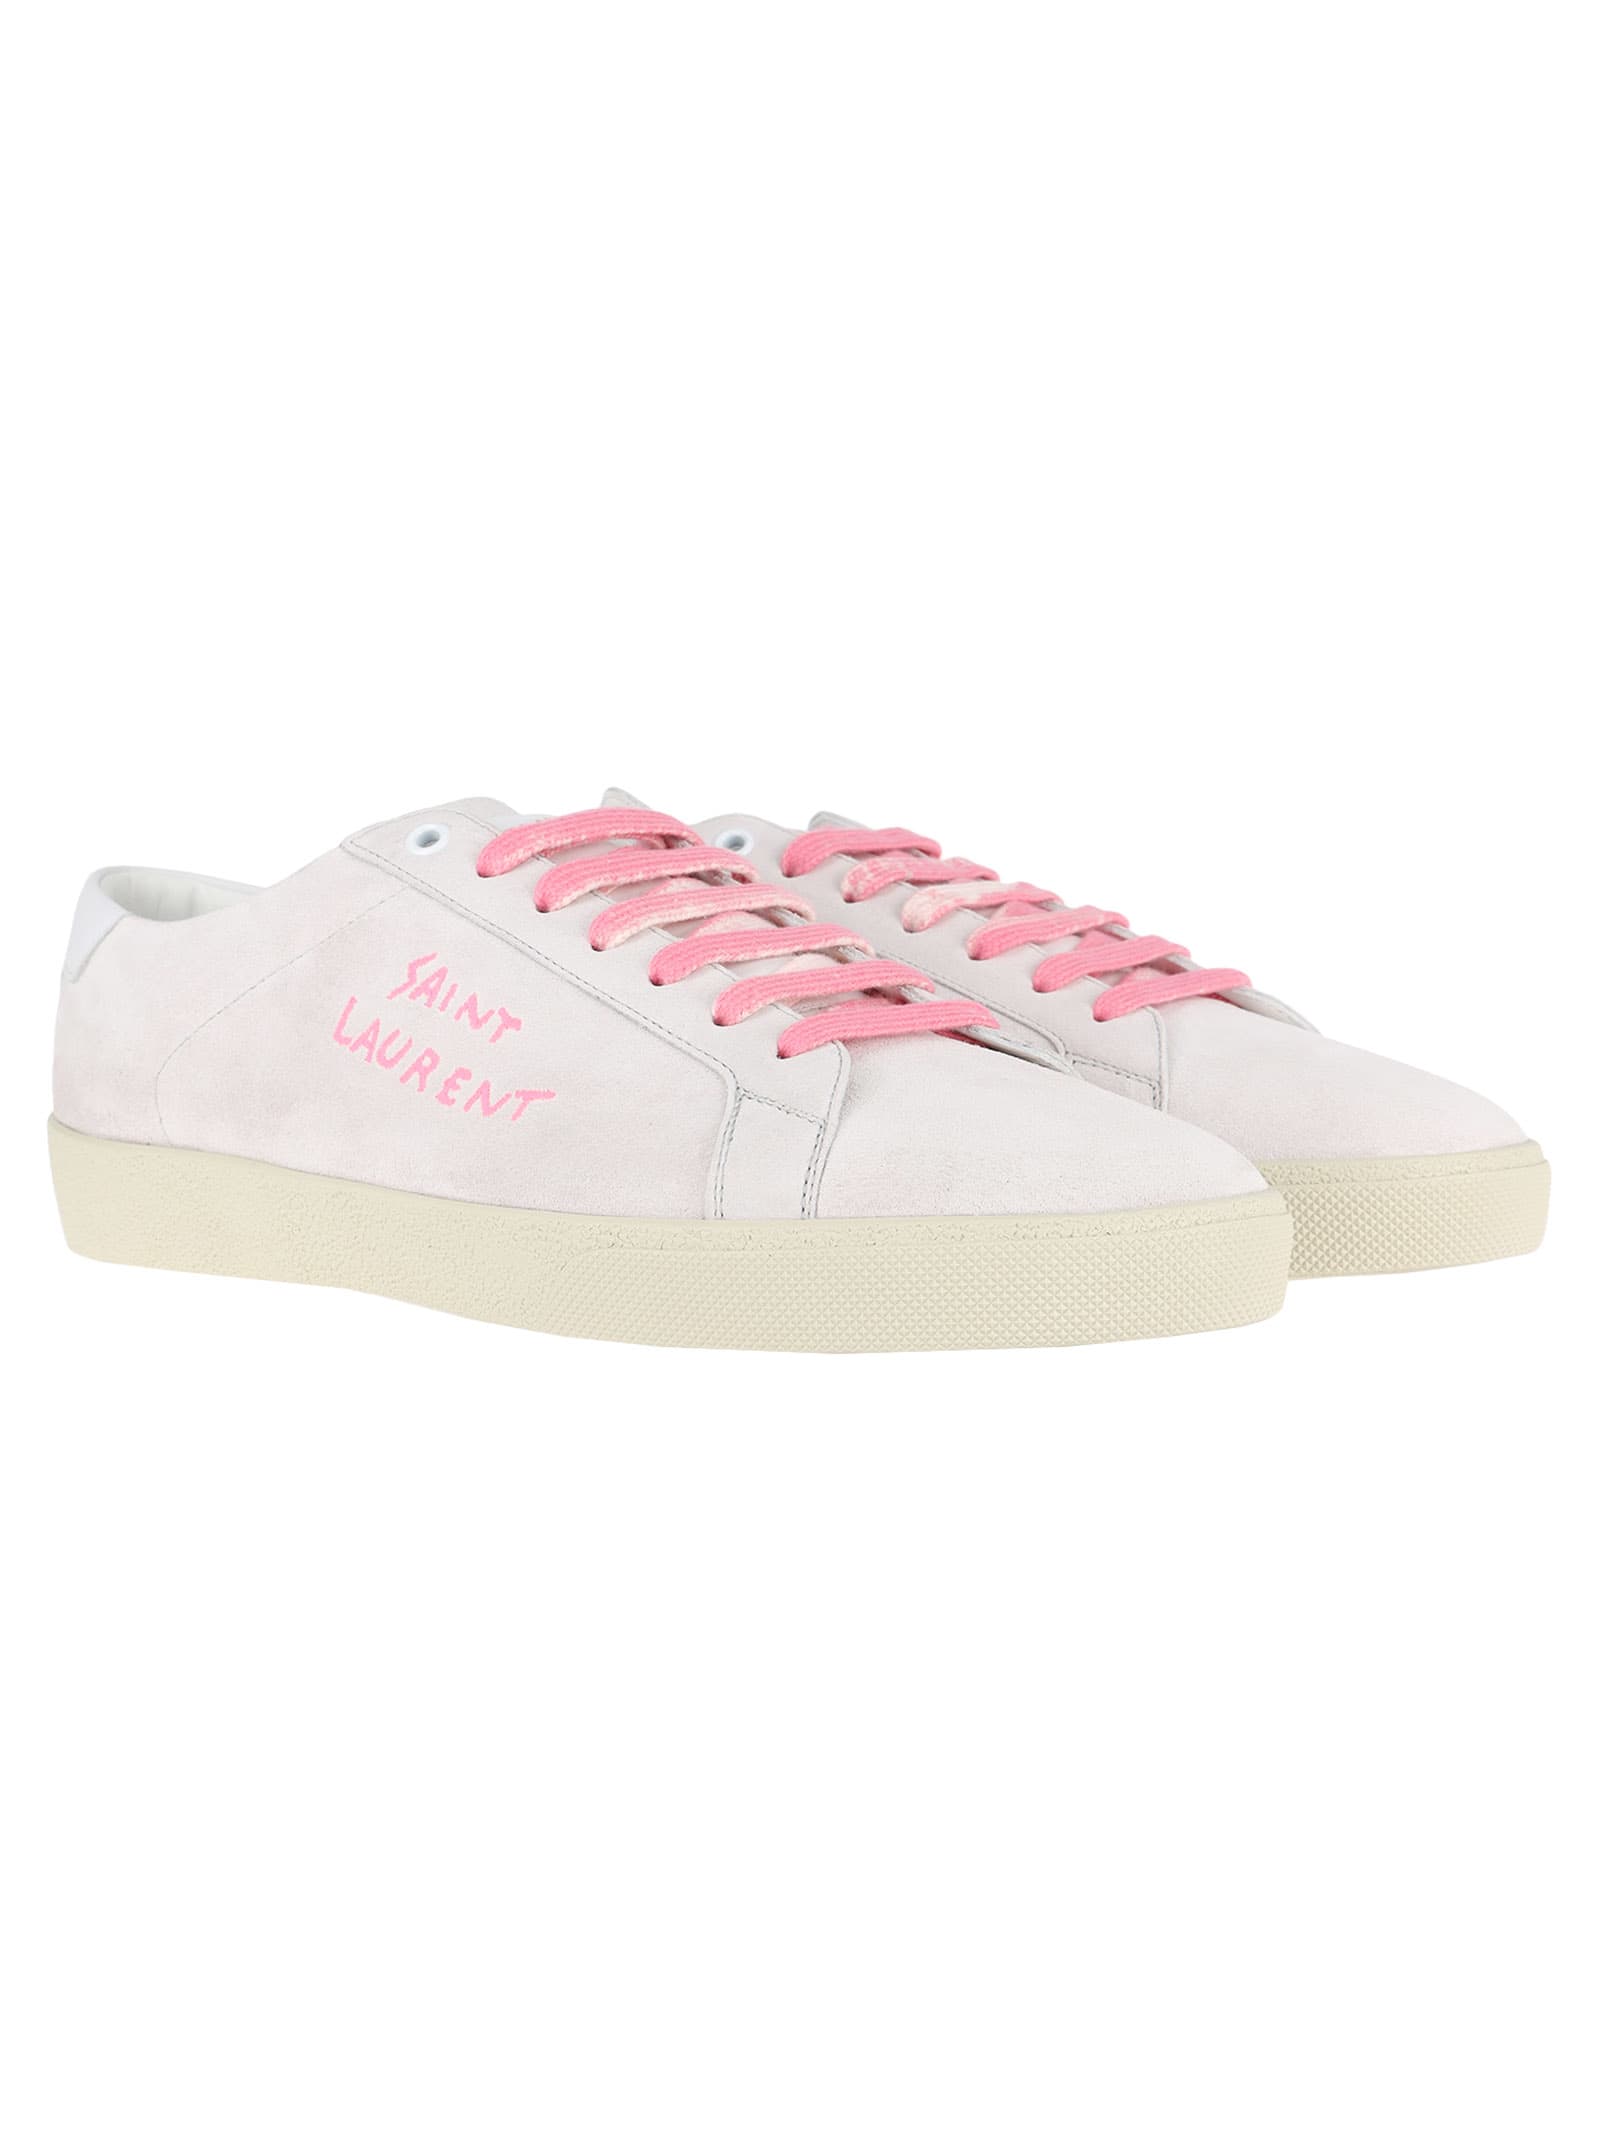 pink saint laurent sneakers